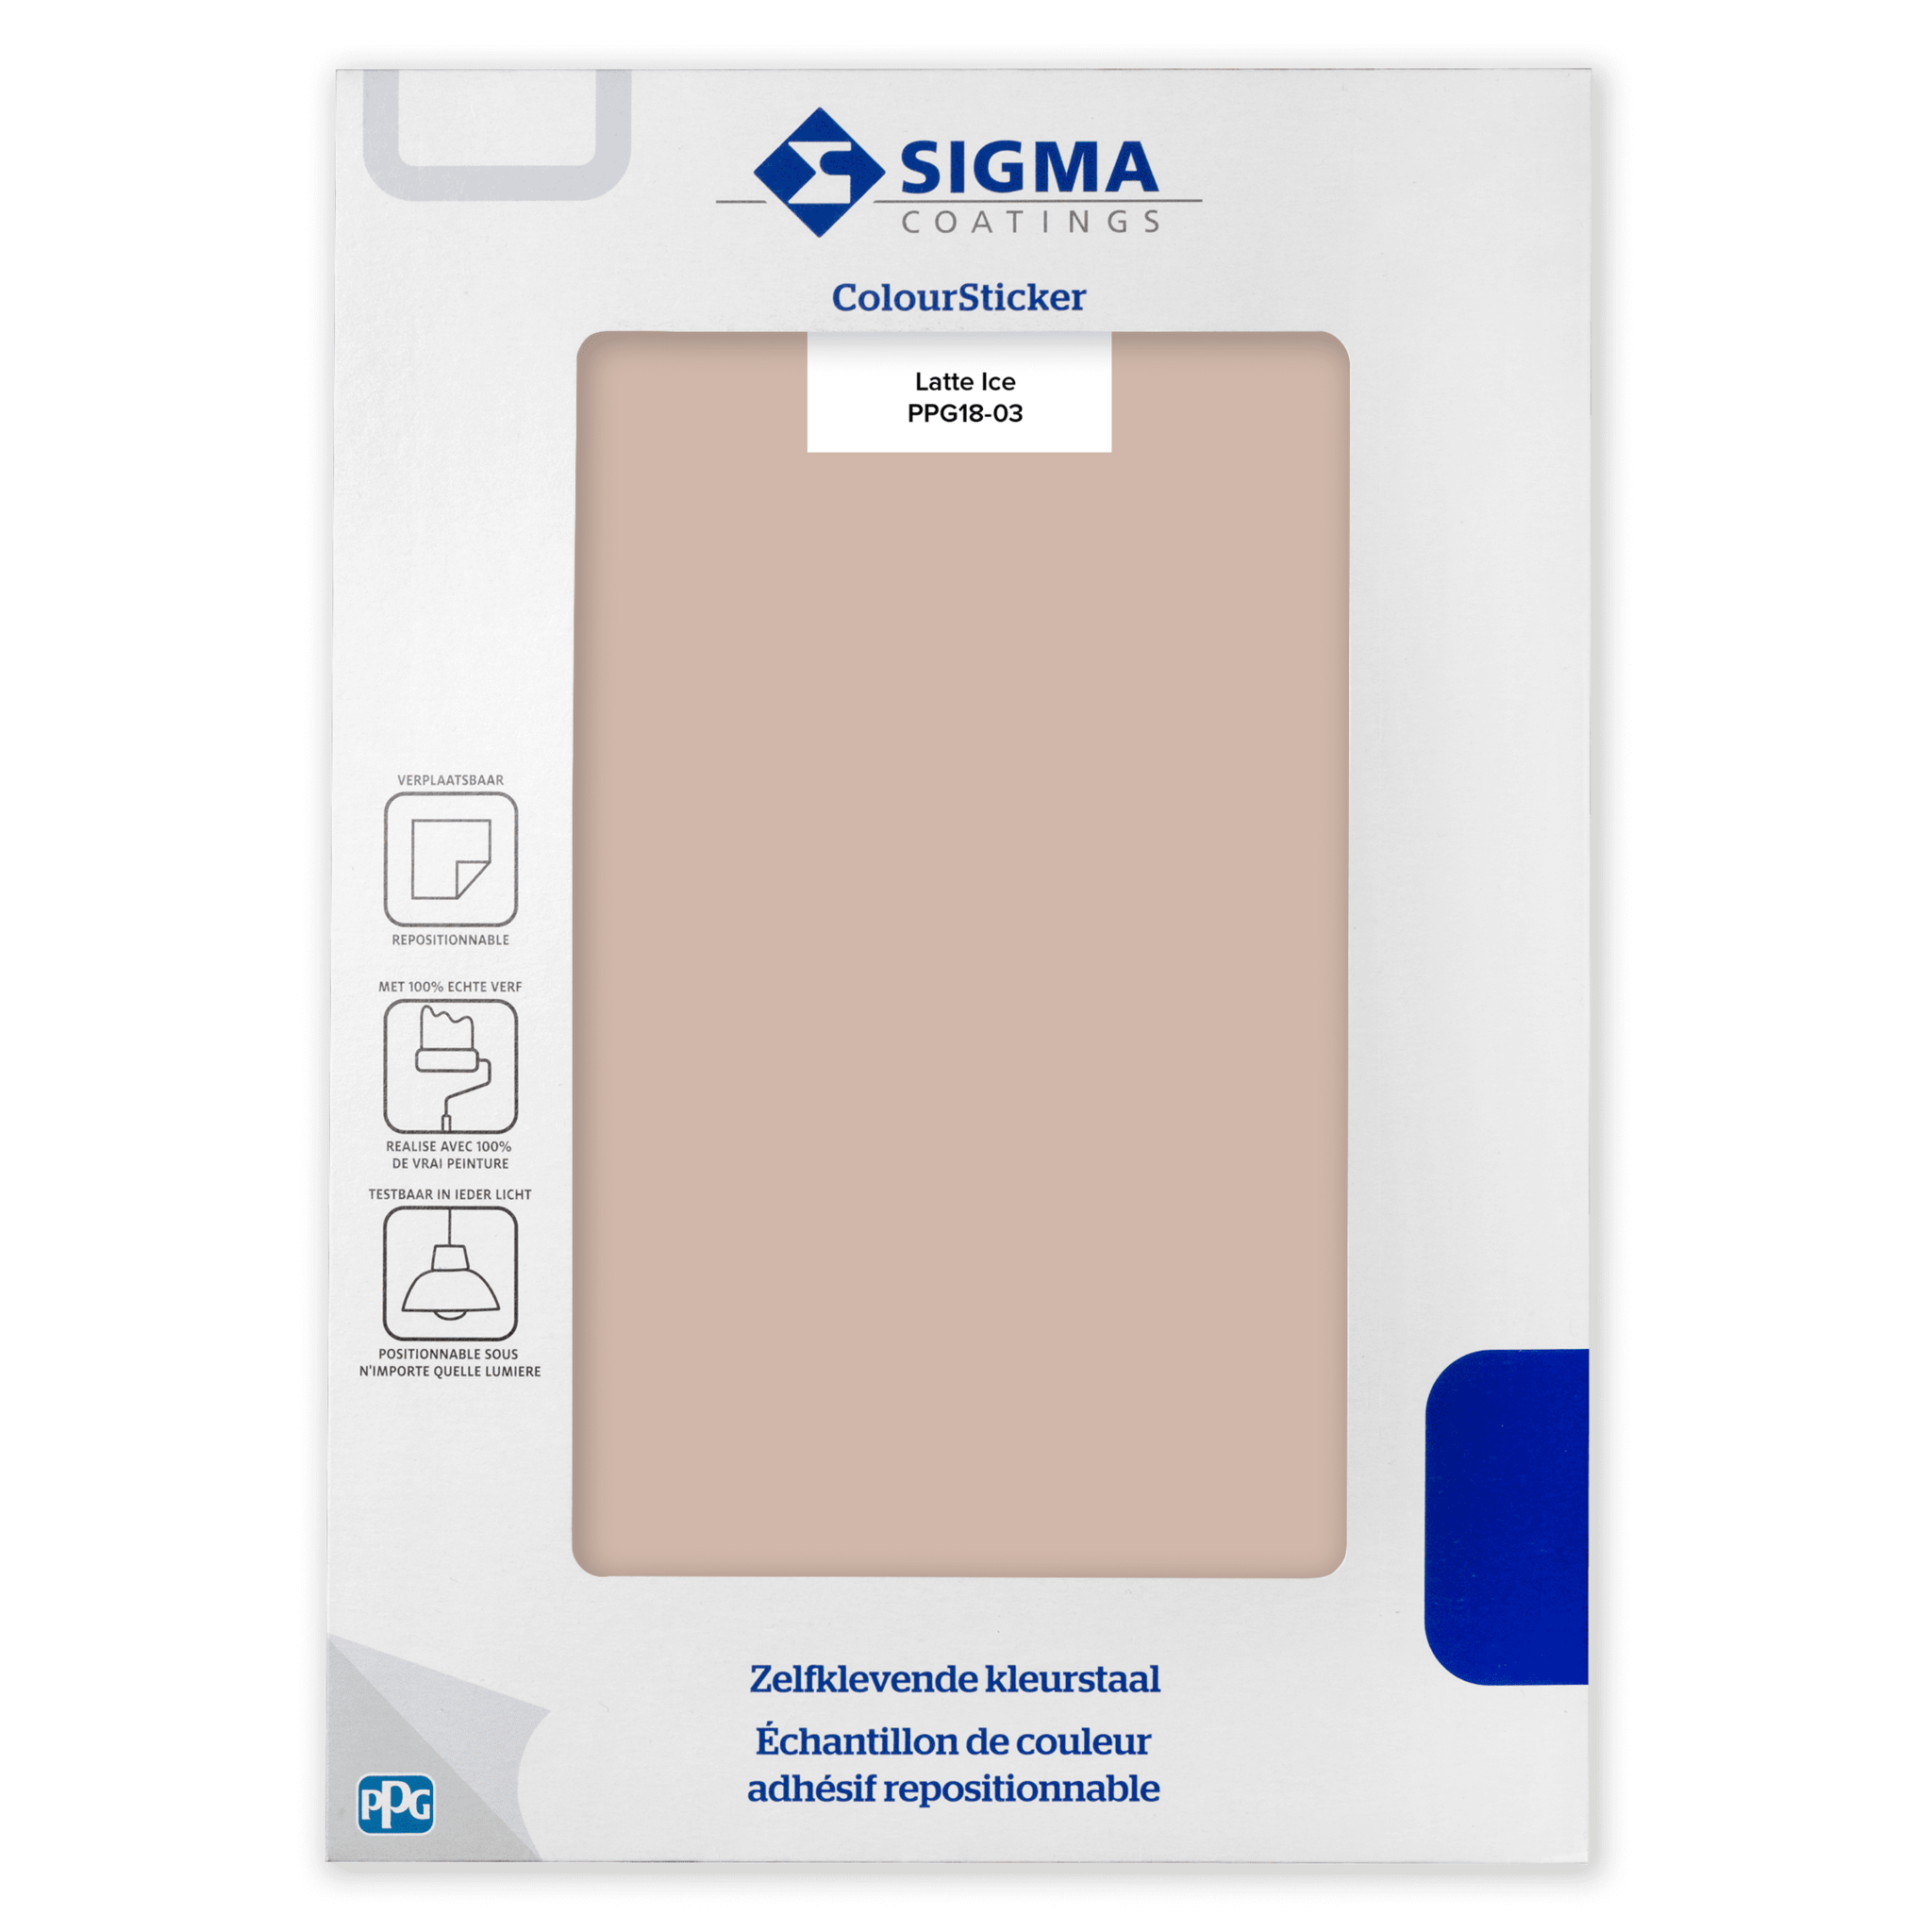 Sigma ColourSticker - Latte Ice 18-03